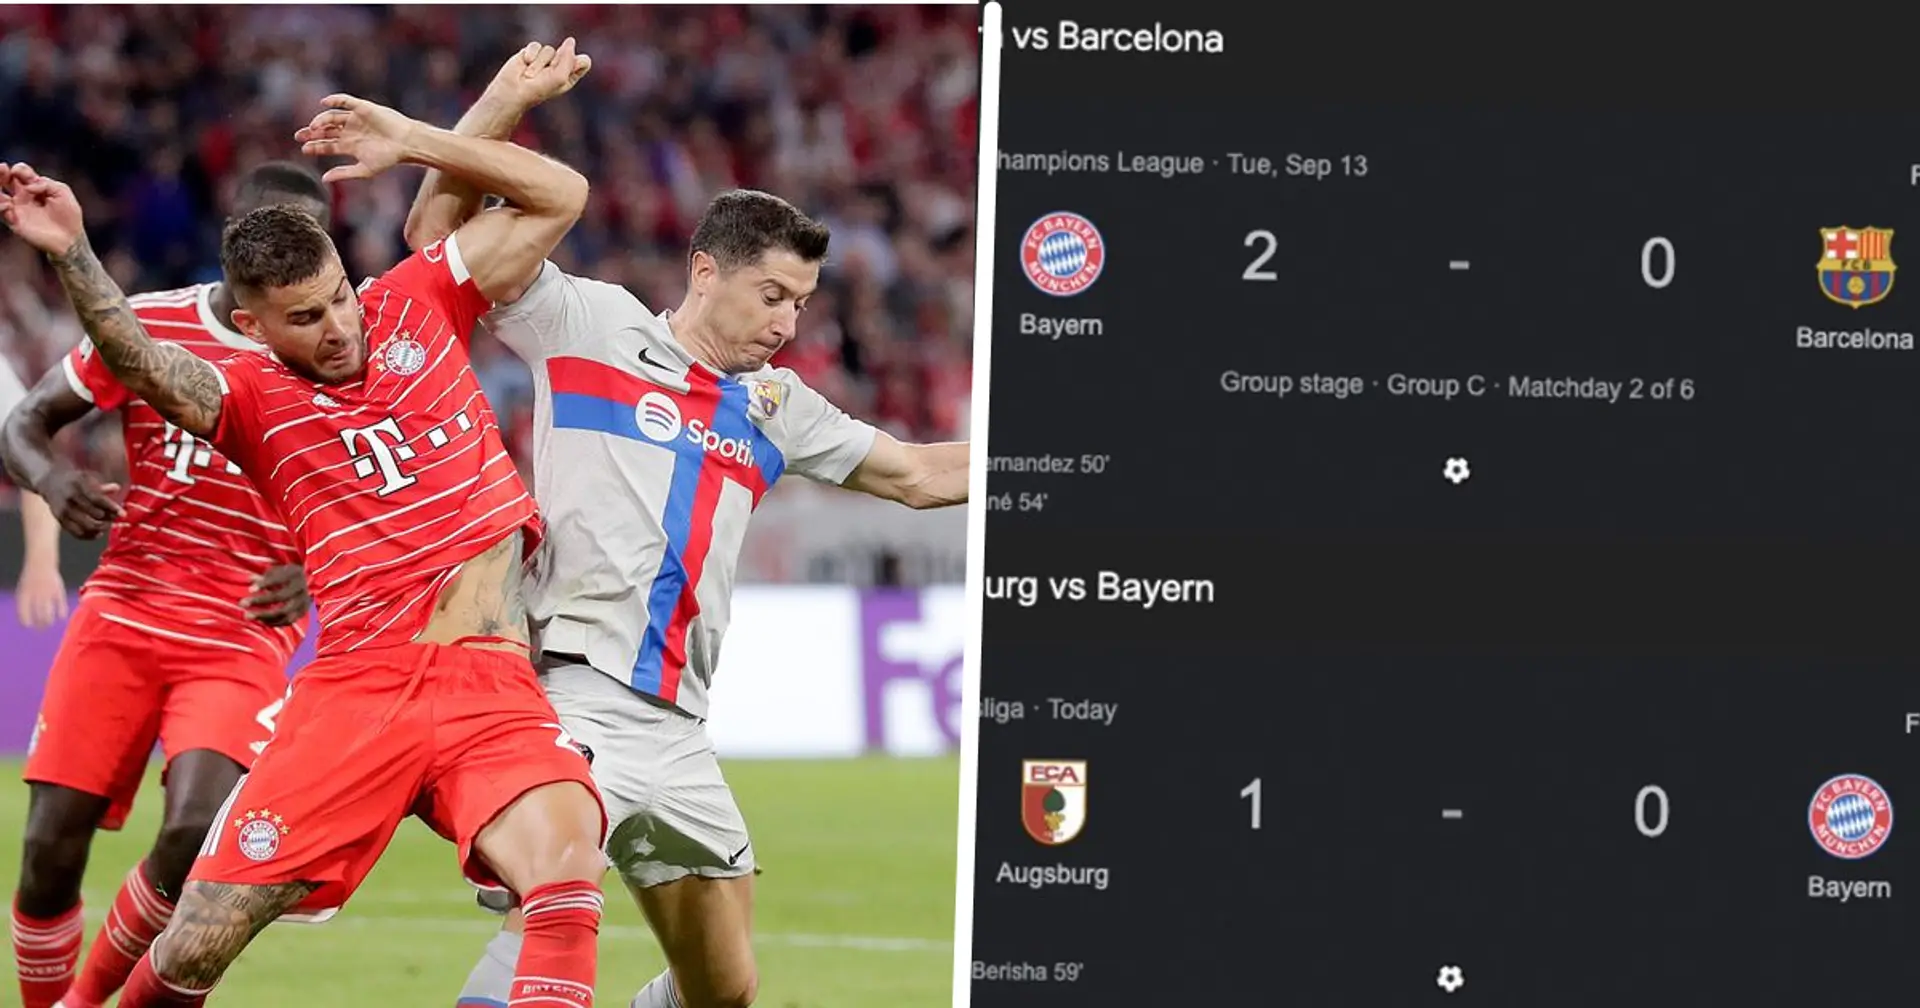 Le Bayern perd contre le 11e en Bundesliga après avoir battu le Barça, désormais aucun victoire en 4 matchs de championnat